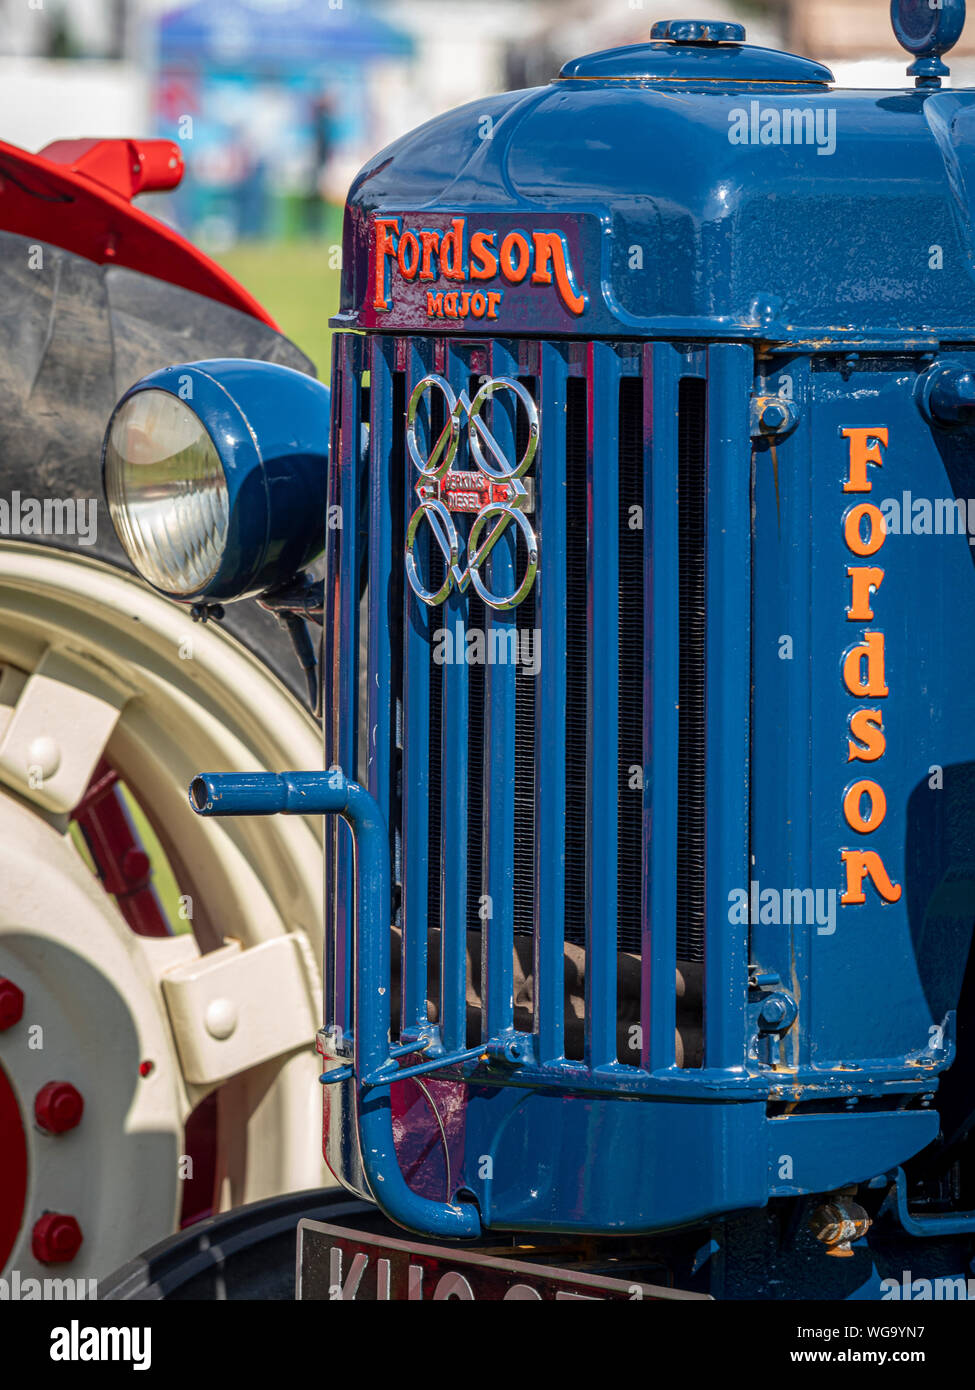 Parte delantera del tractor de época Fordson azul con letras rojas Foto de stock